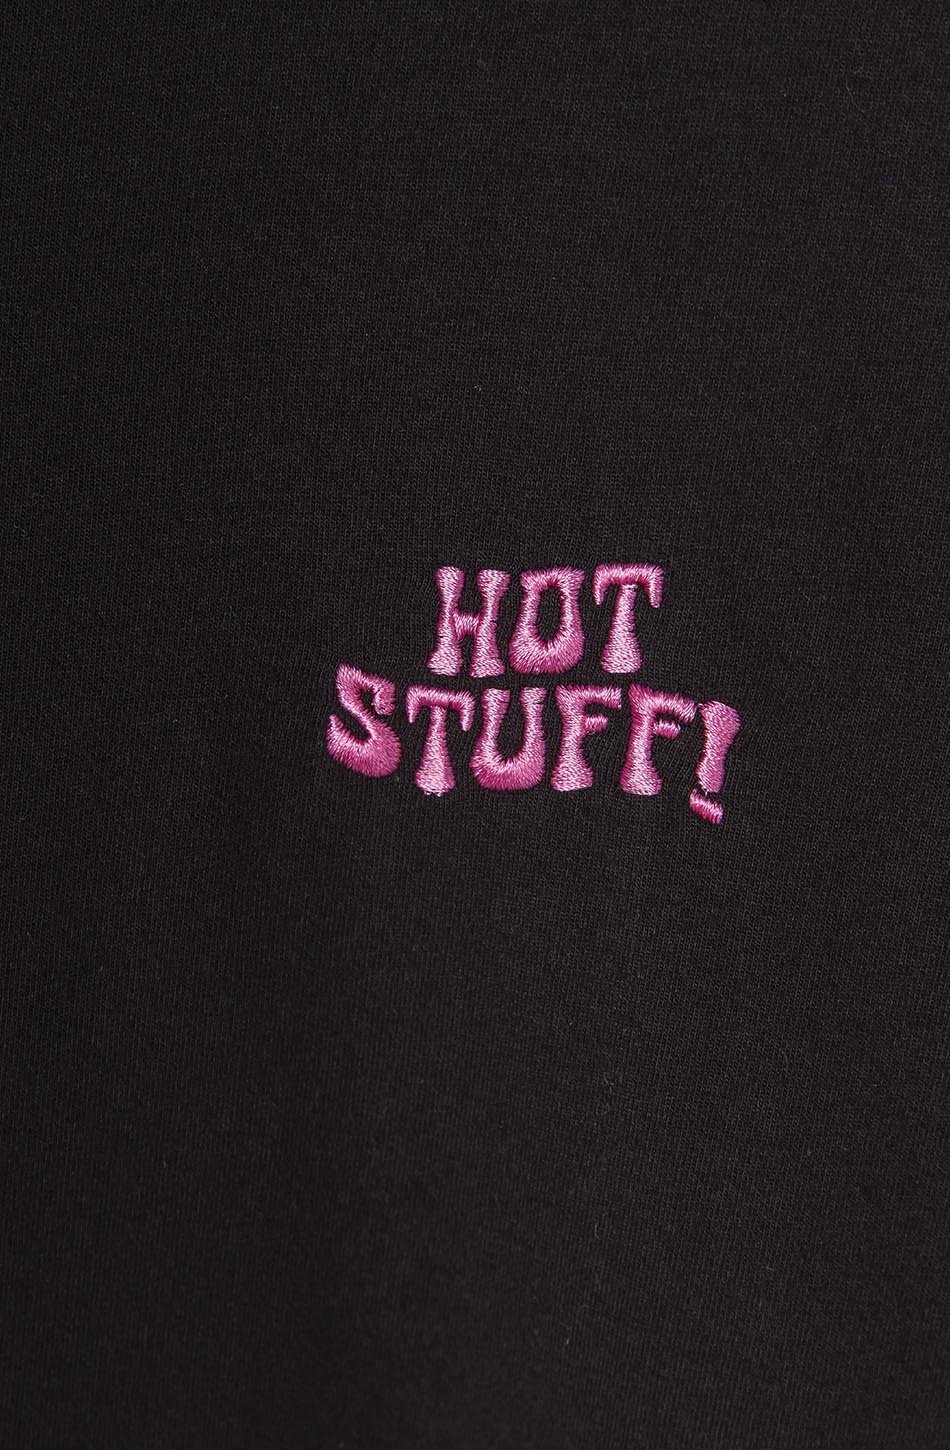 Tee-shirt Hot Stuff Heart Black